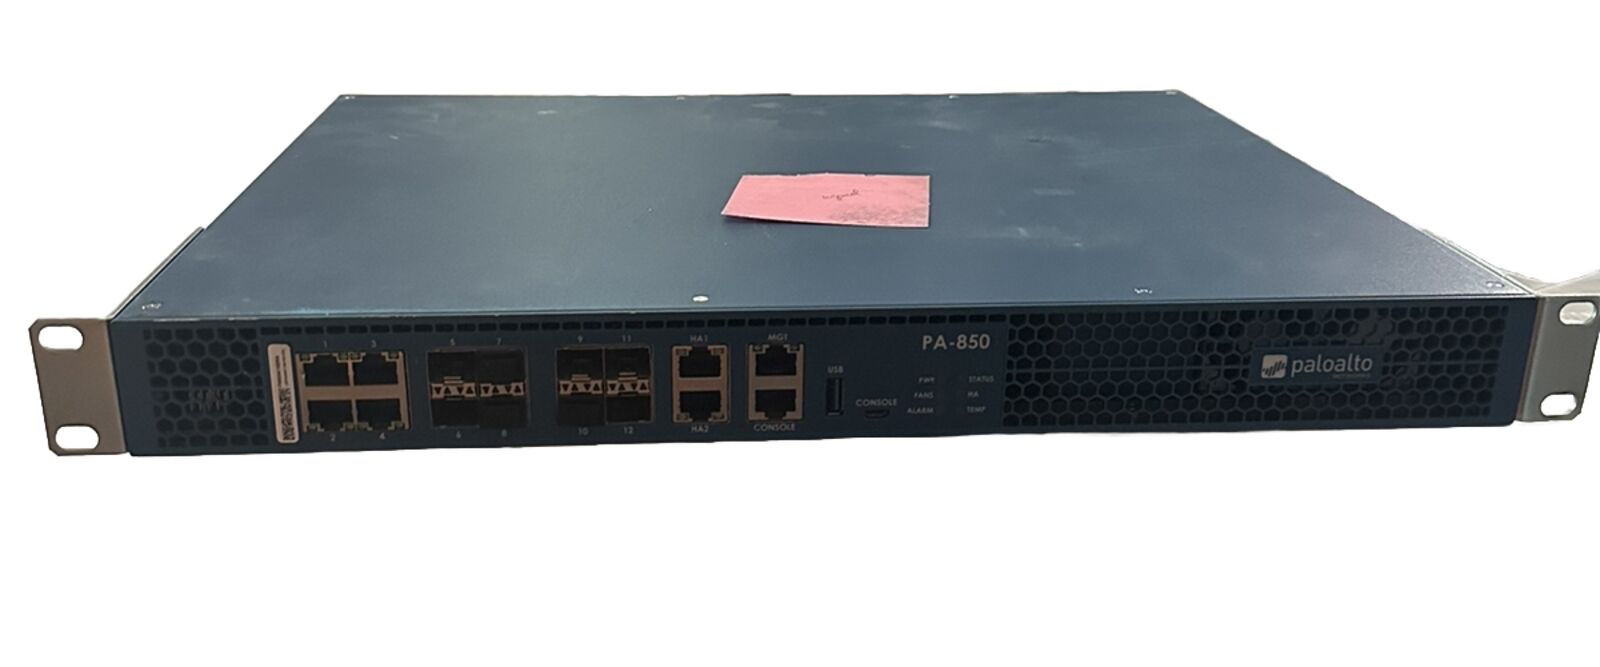 Palo Alto PA-850 Next-Generation Firewall VPN Gateway